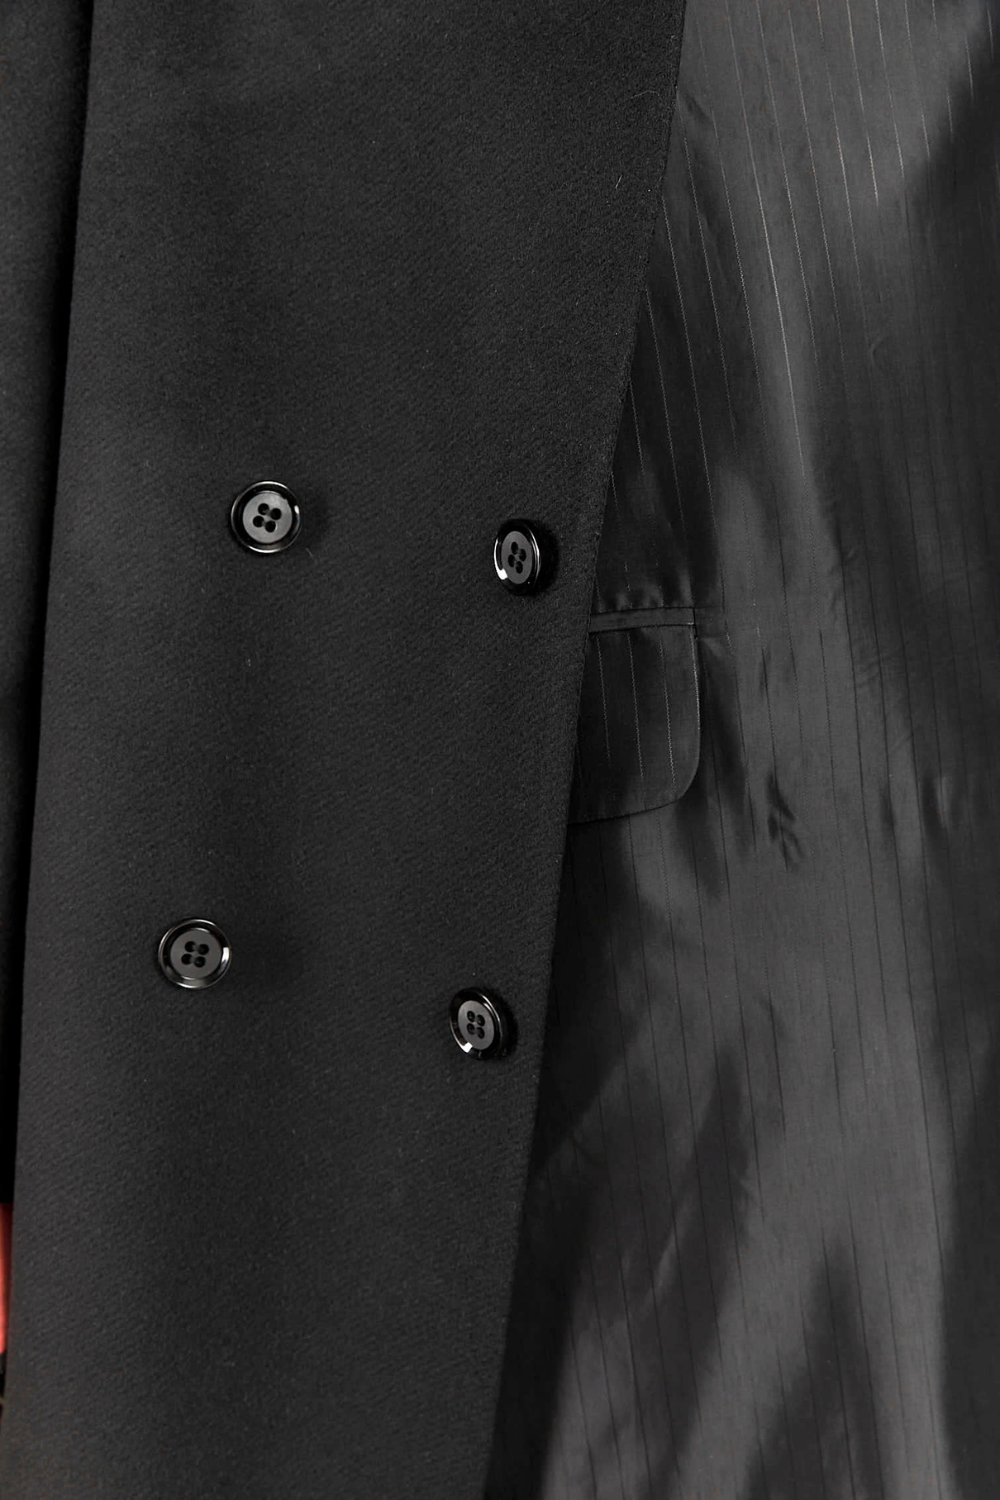 Oversized vlněný kabát s viditelnou podšívkou a rozparky na rukávech (GUDU) CT005AW22-23